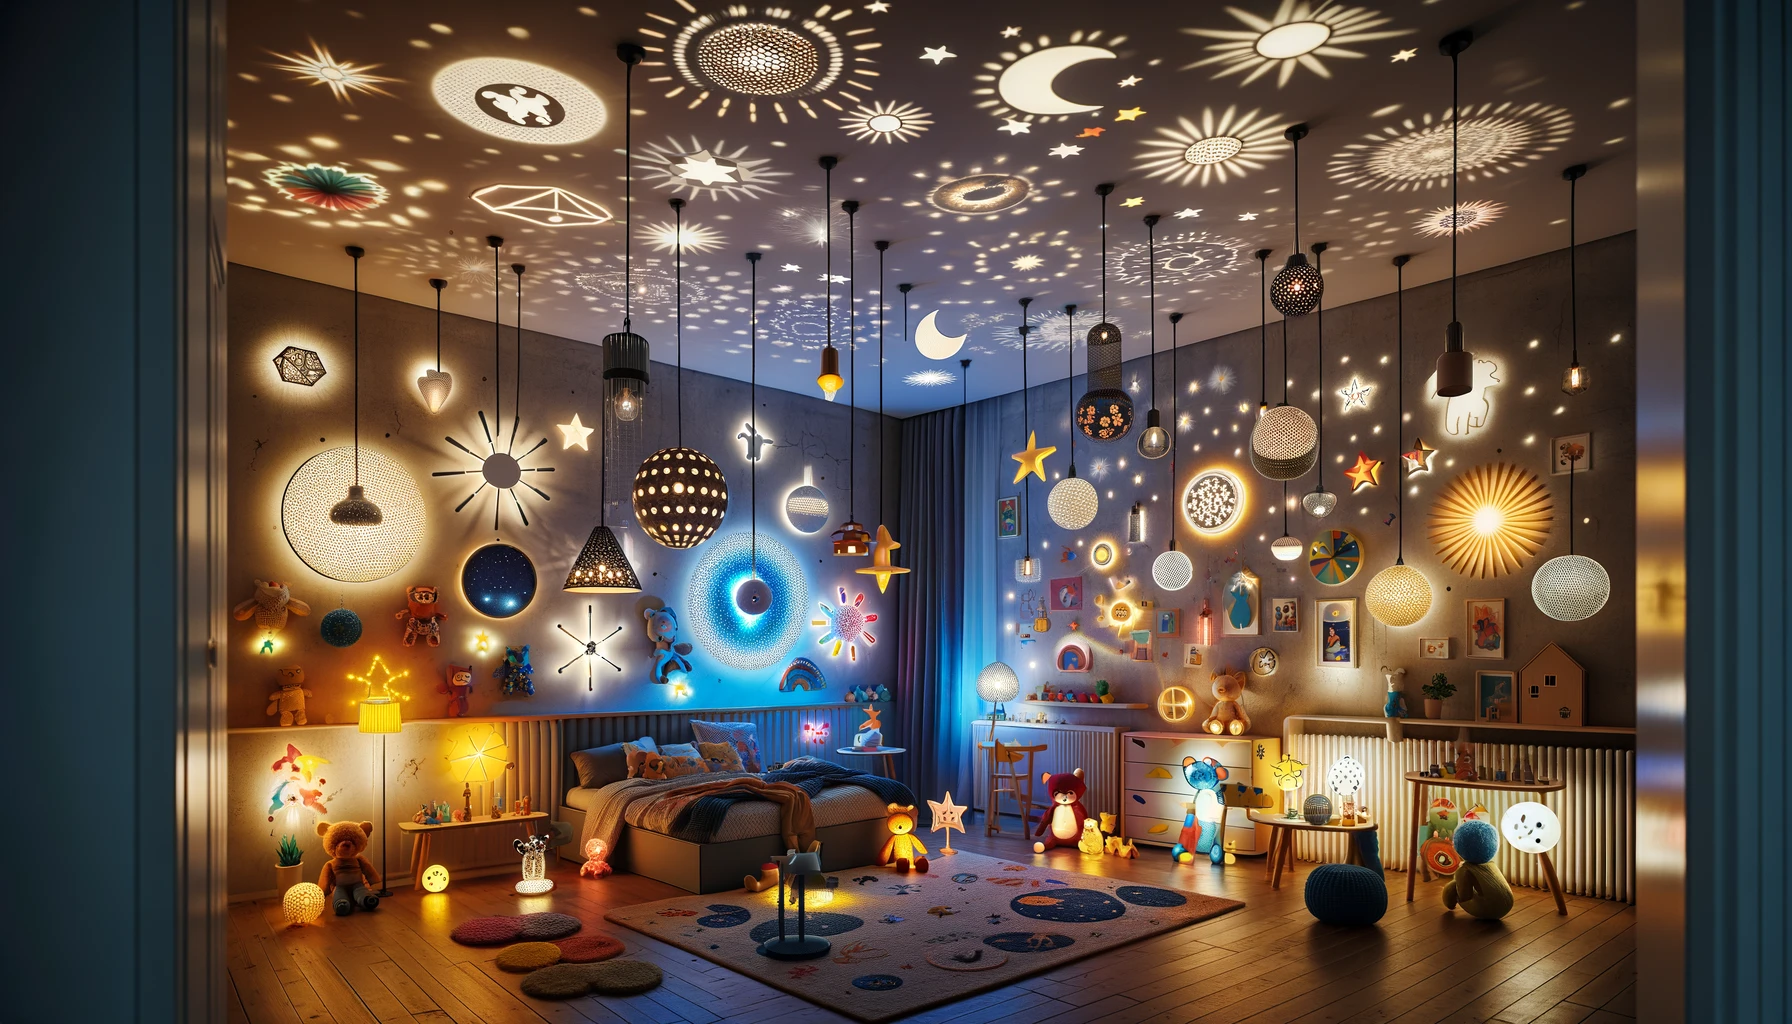 Ilumina el mundo de tus pequeños: Ideas creativas para iluminar la habitación de tu hijo 4